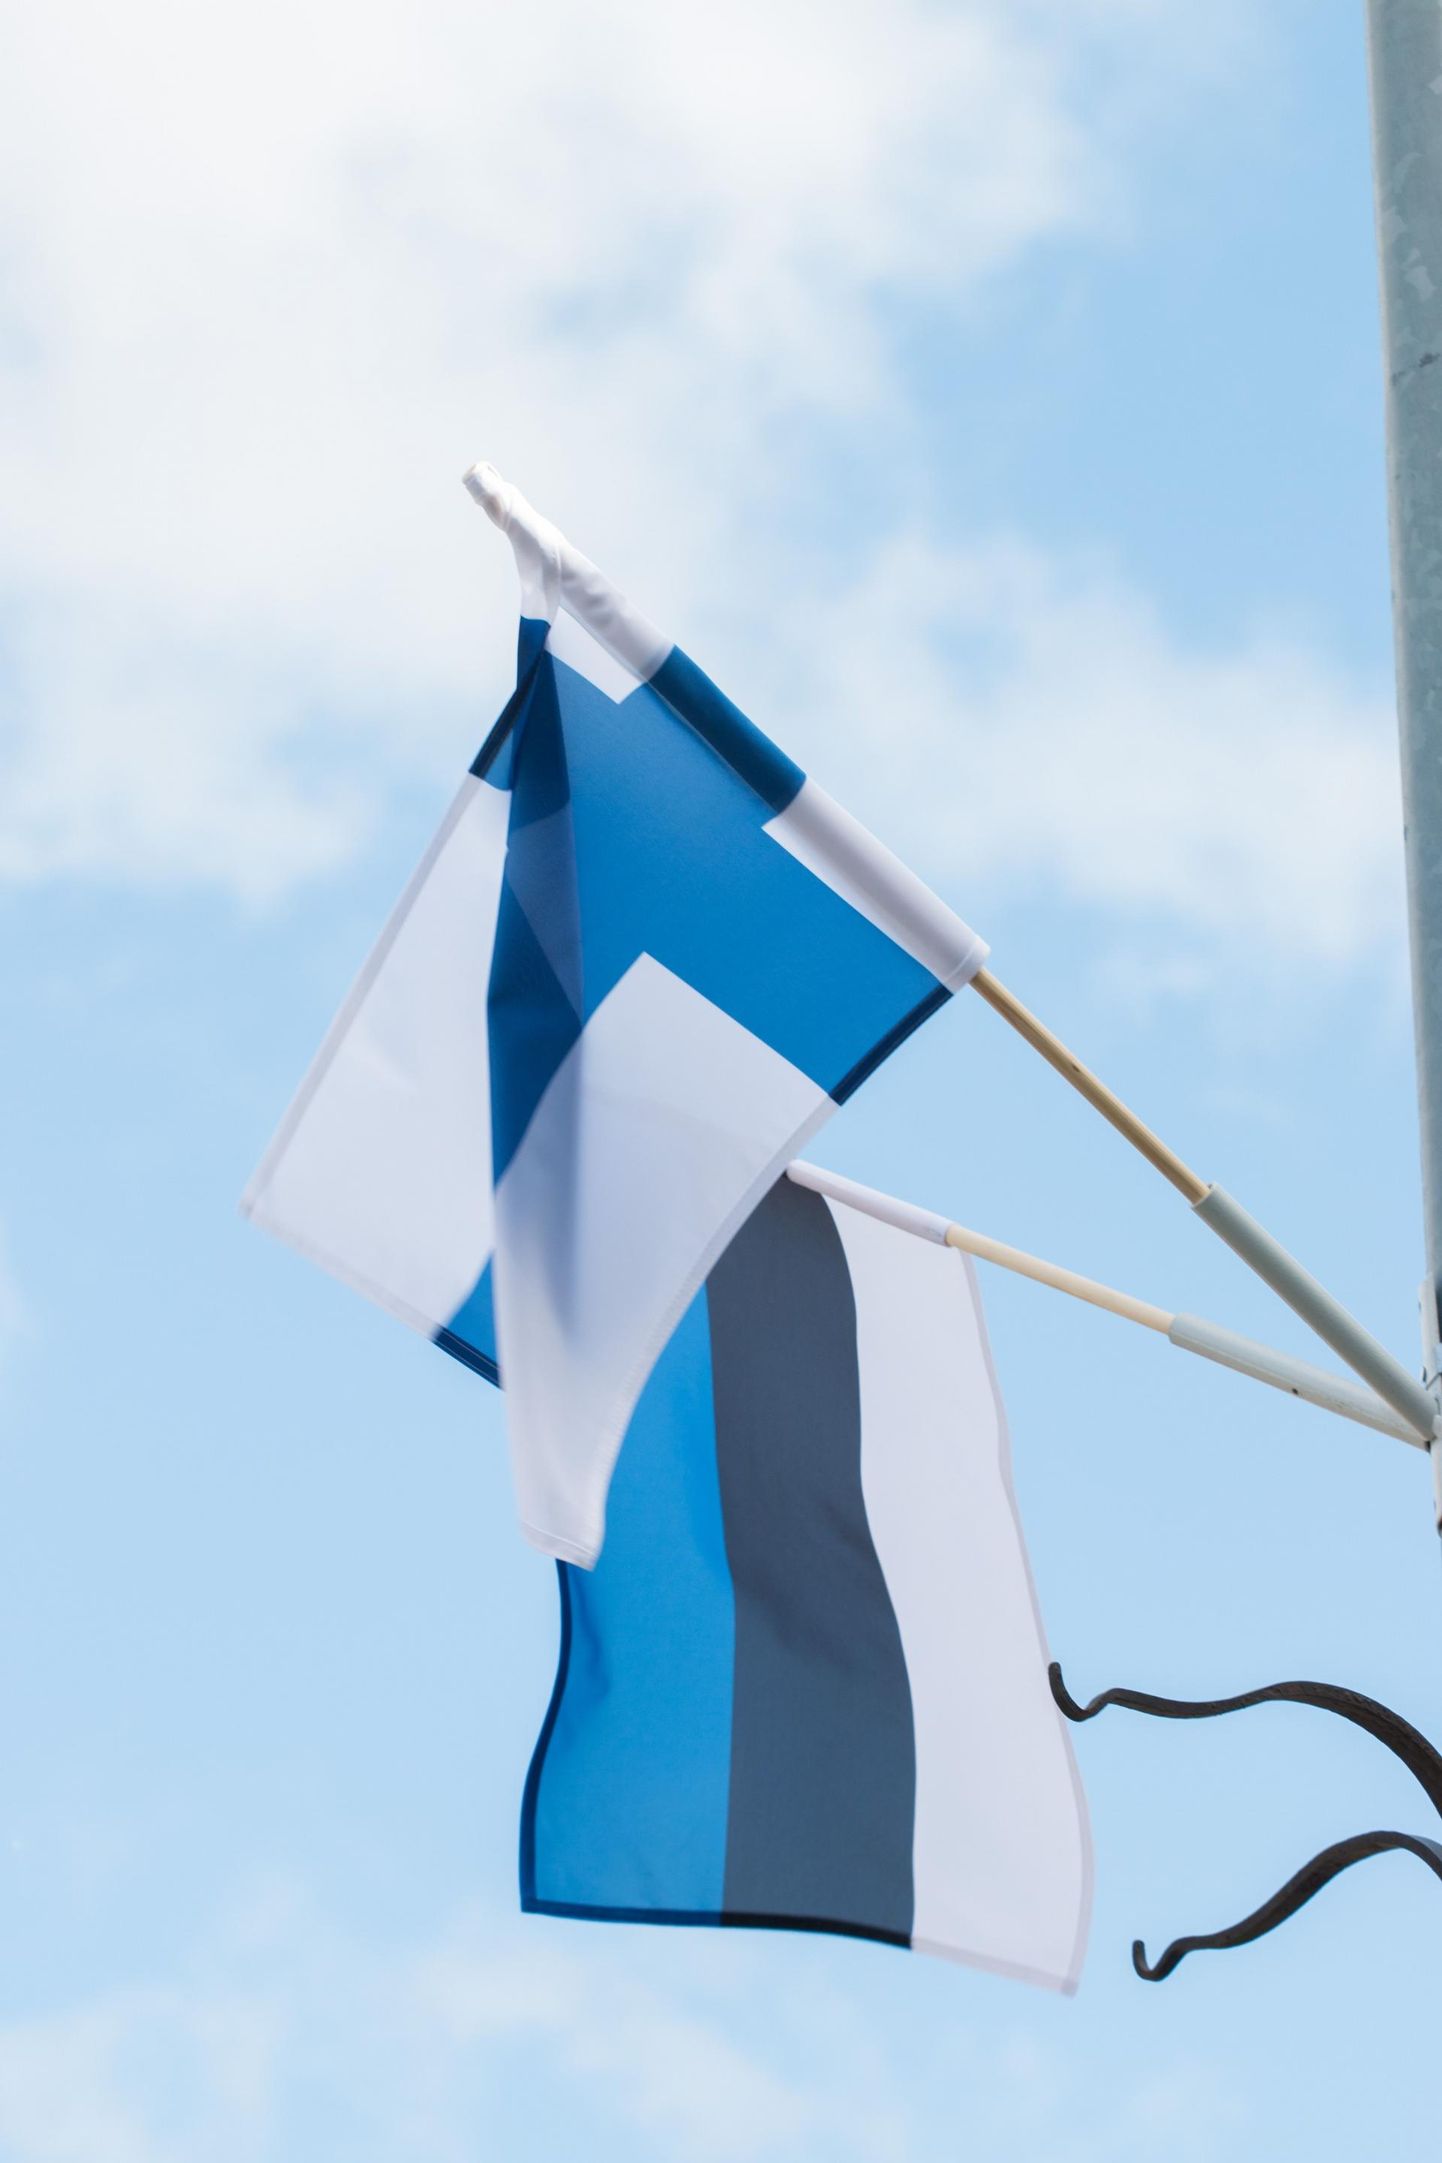 Otsus eesti keele õpet Soome ülikoolides koomale tõmmata tähendab ka, et siinse kultuuri mõtestajaid jääb teispool Soome lahte oluliselt vähemaks.